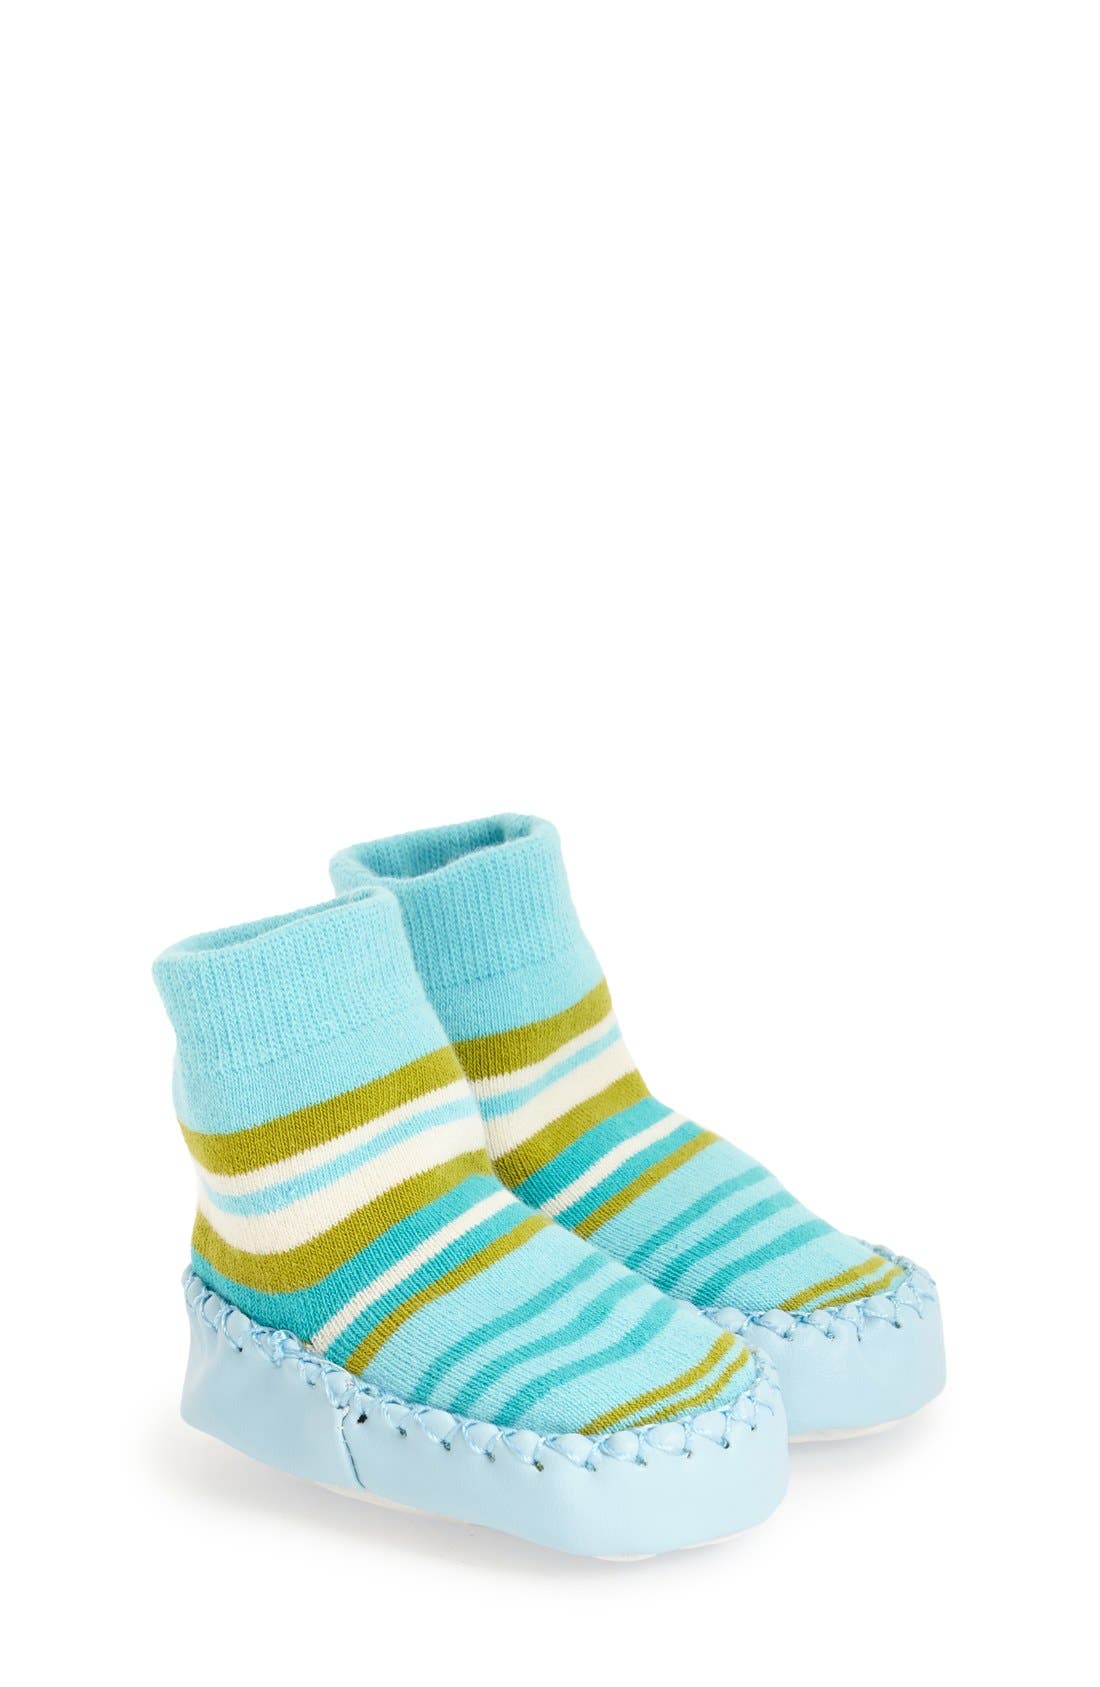 nordstrom slipper socks